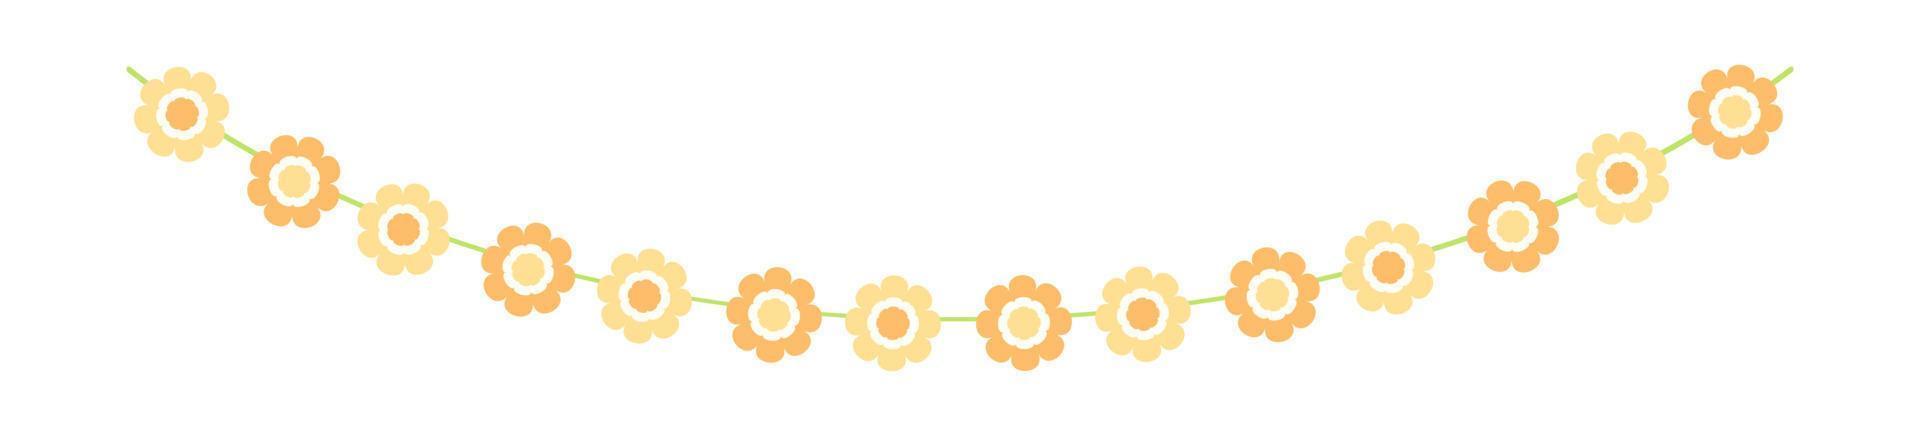 schattig voorjaar bloemen slinger illustratie. bloem Gorzen voor lente ontwerpen. vector